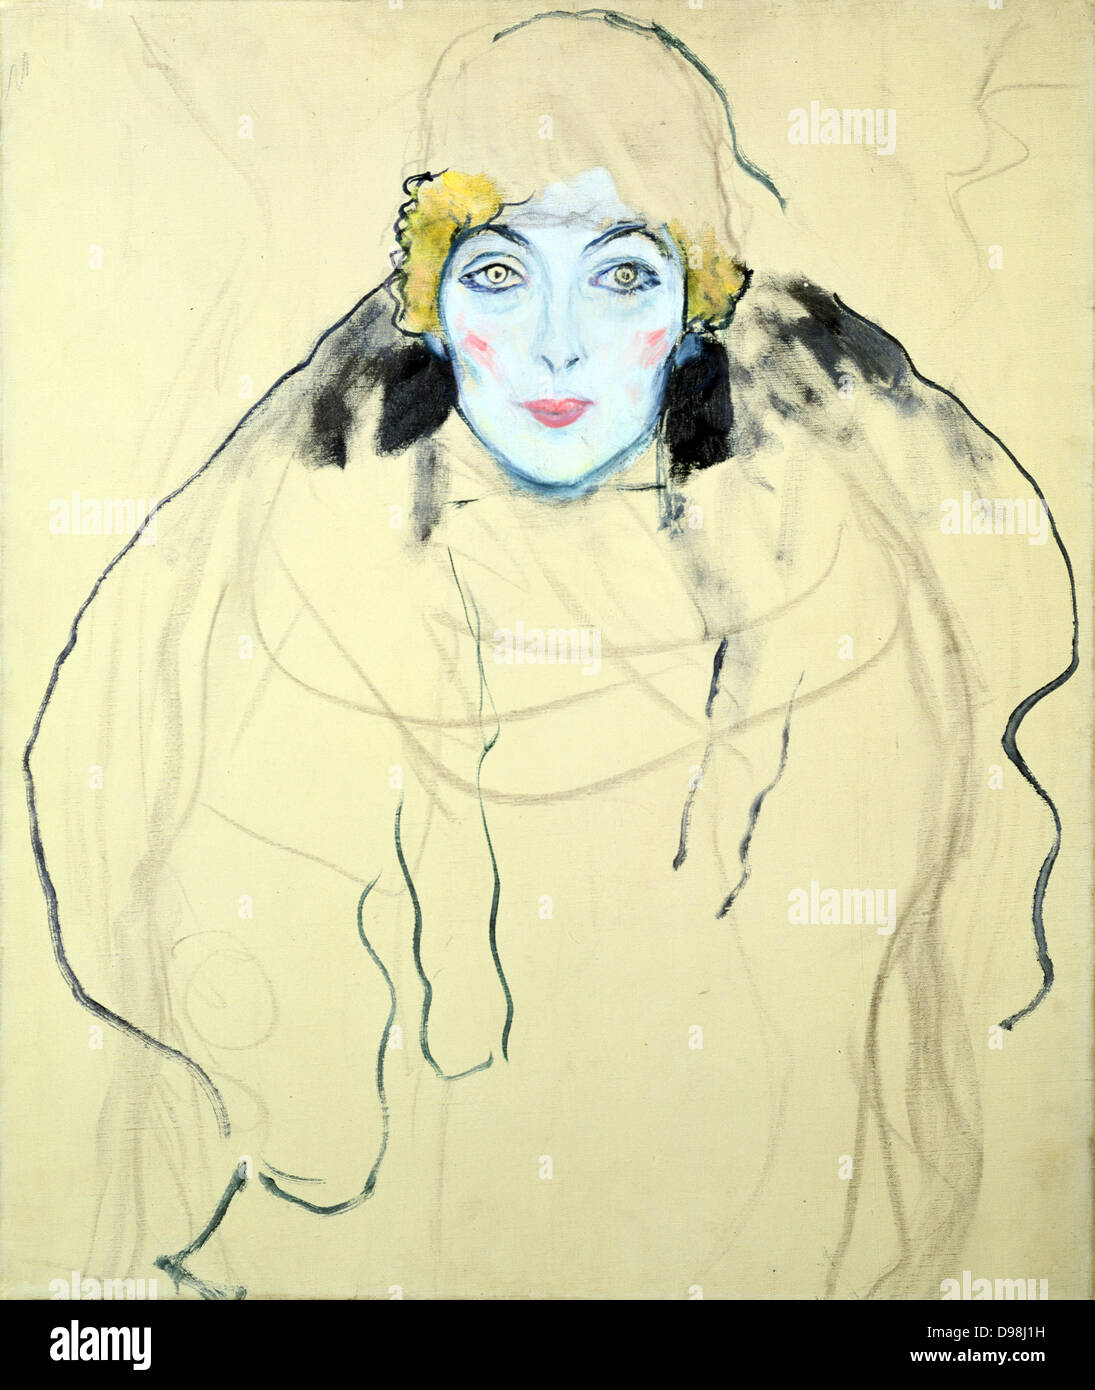 Frauen Kopf" (tête de femme) 1917-1918. Huile sur bois par Gustav Klimt (1862-1919) peintre symboliste autrichien. Banque D'Images